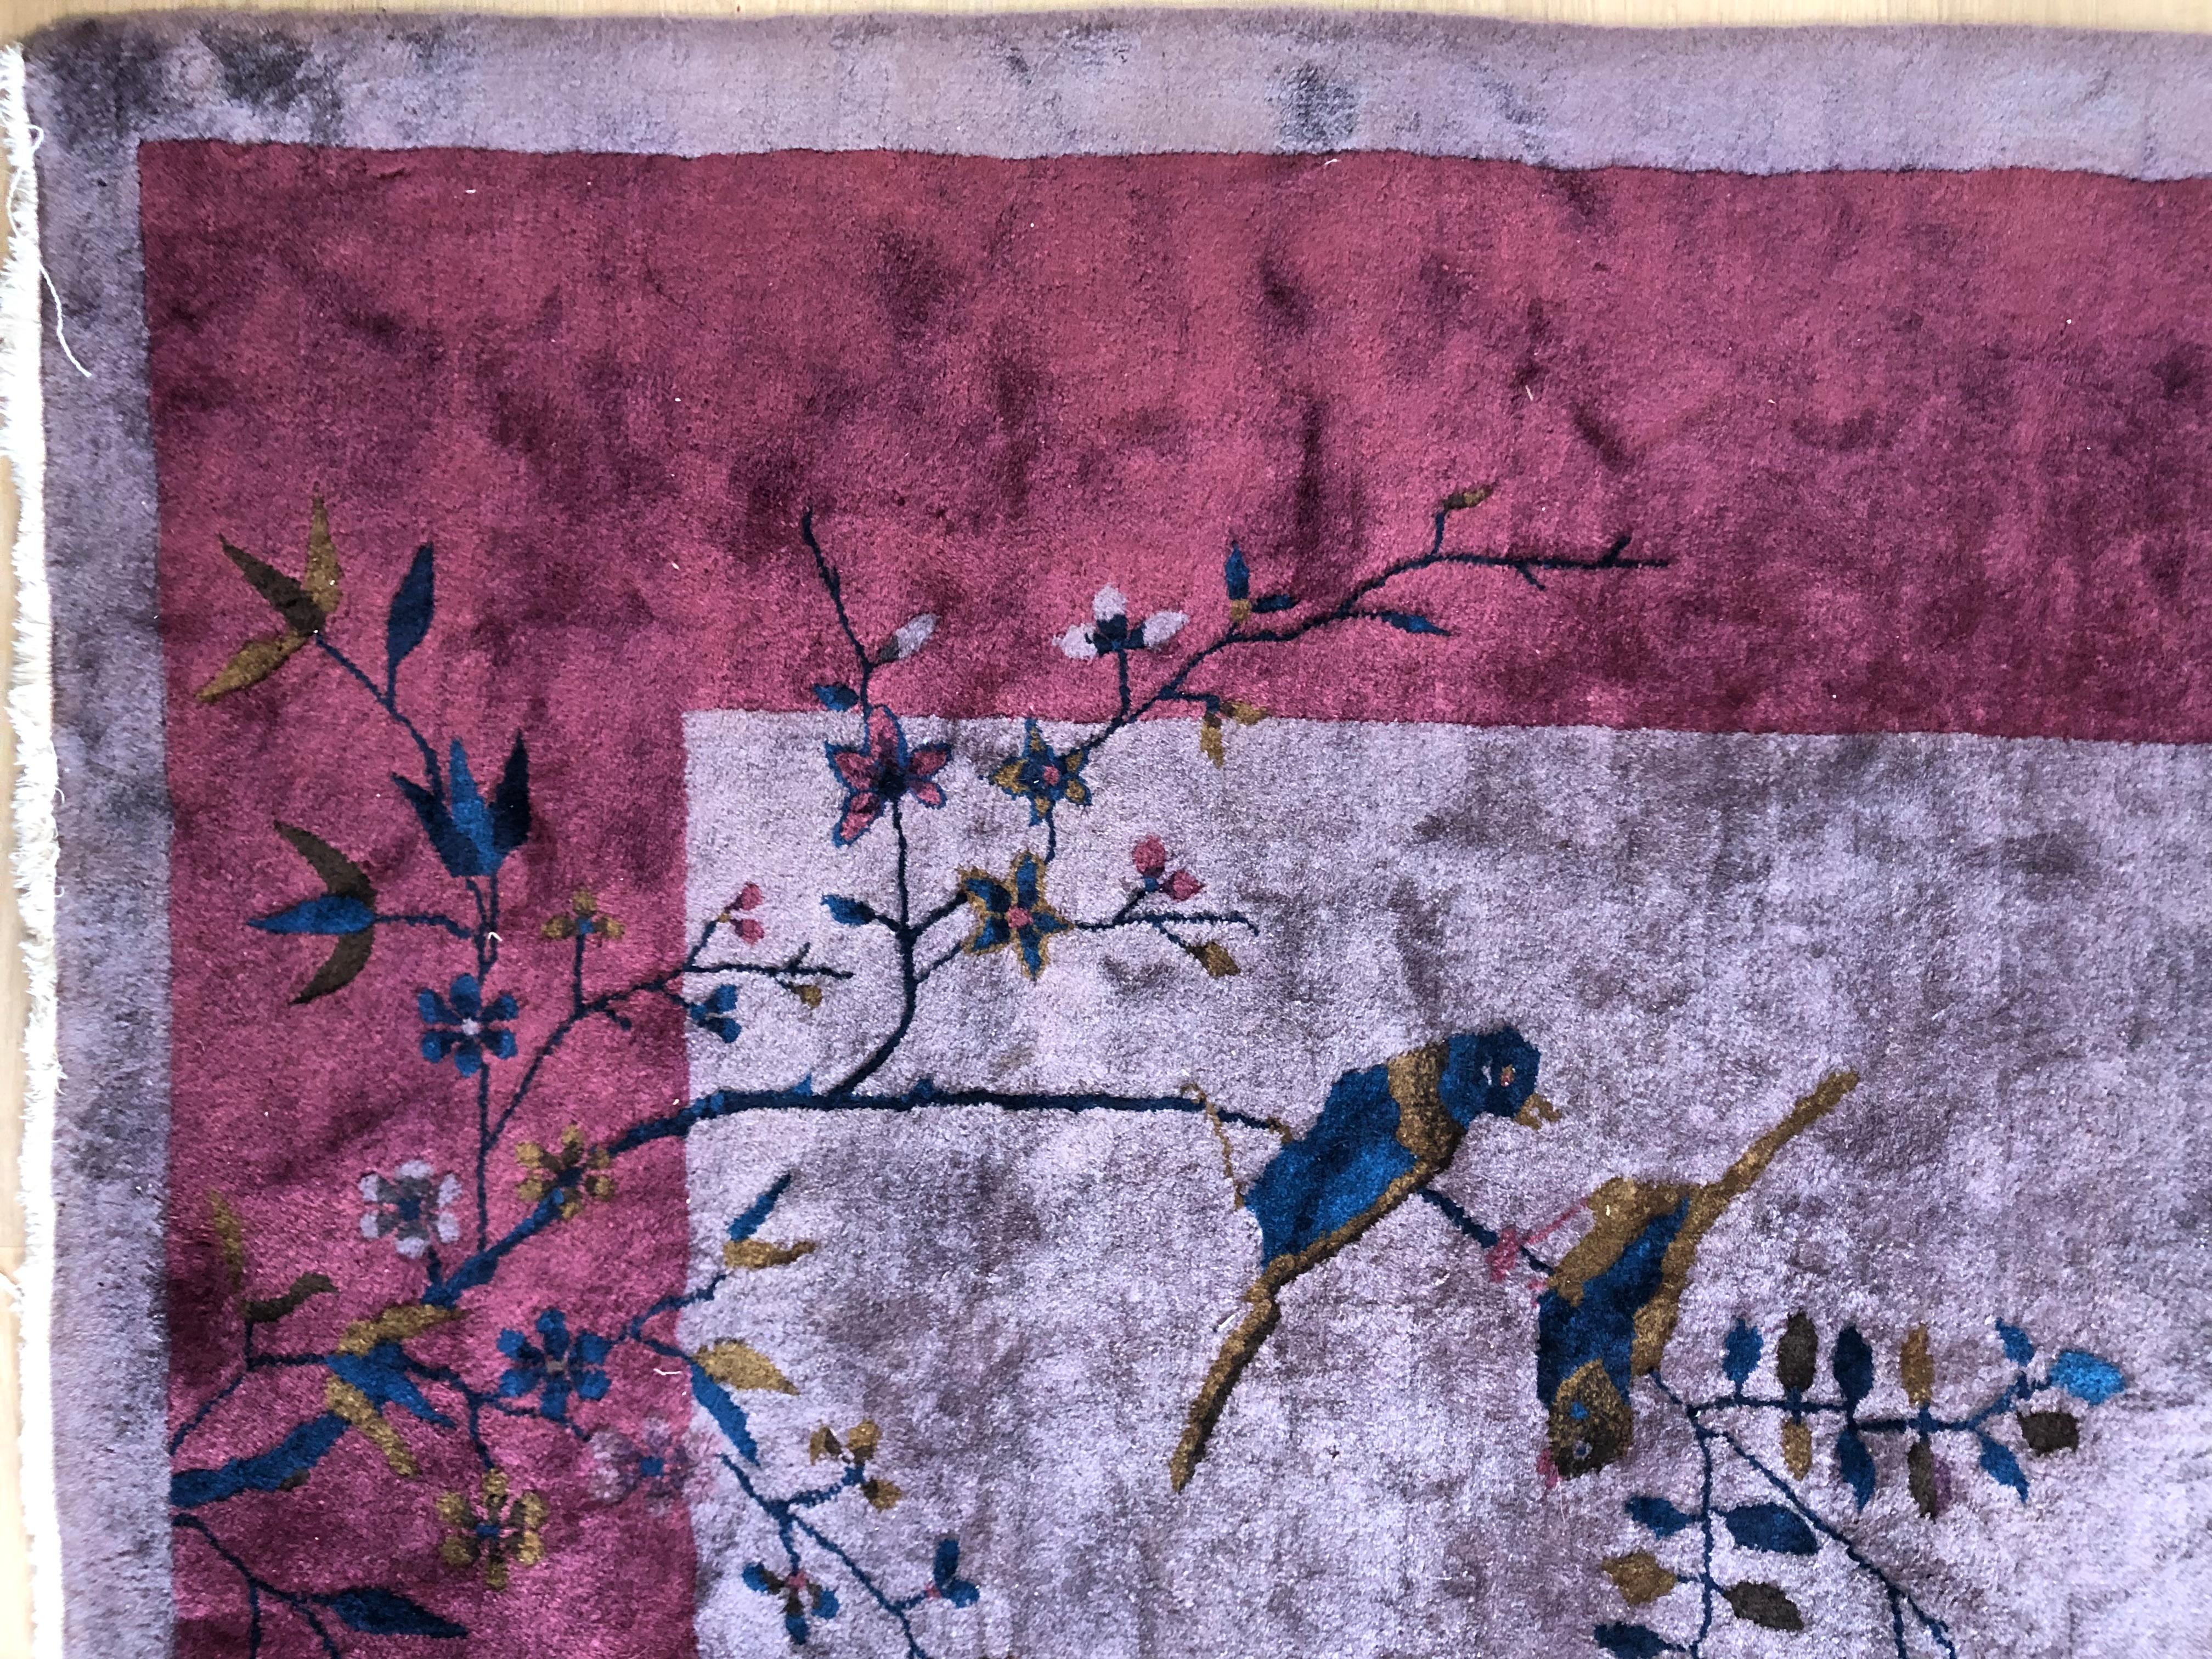 Spektakulärer chinesischer Art-Déco-Teppich mit ungewöhnlichem violettem Grund und Maulbeerbaum-Bordüre, die Außenkanten mit Details aus der Nature, darunter Blumen, Insekten, Schmetterlinge und Vögel. Um 1930.
Dieser Teppich hat eine sehr